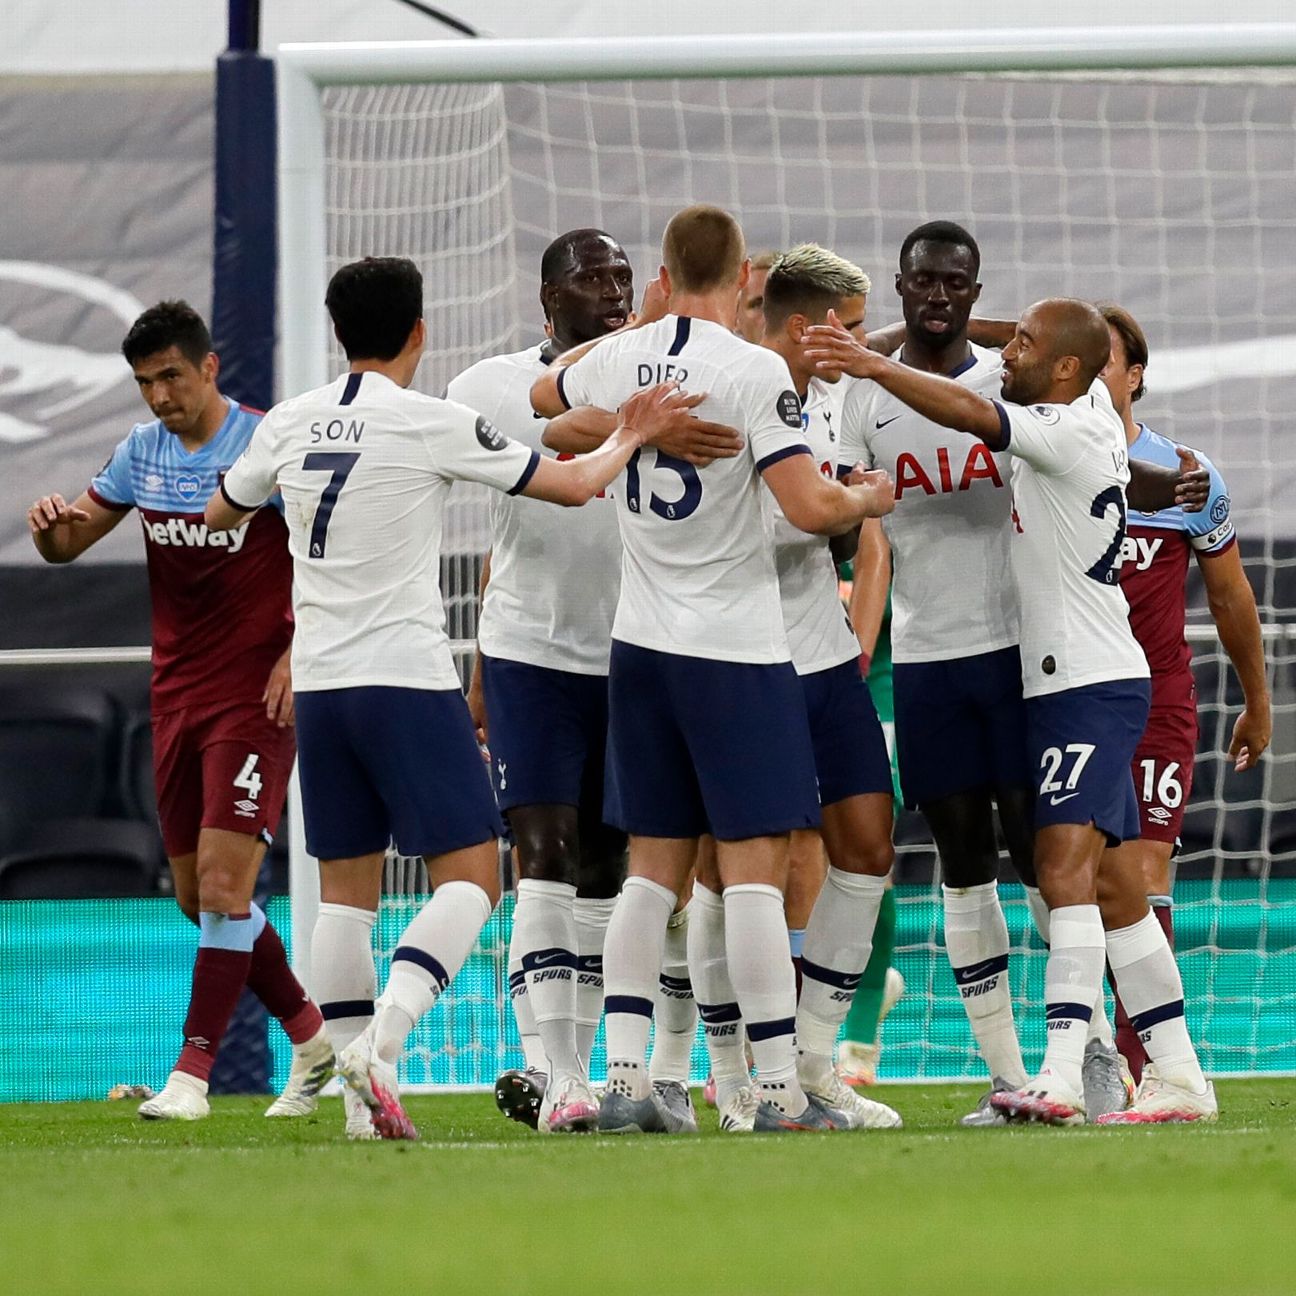 Tottenham Hotspur 2-0 West Ham United (Jun 23, 2020) Game Analysis